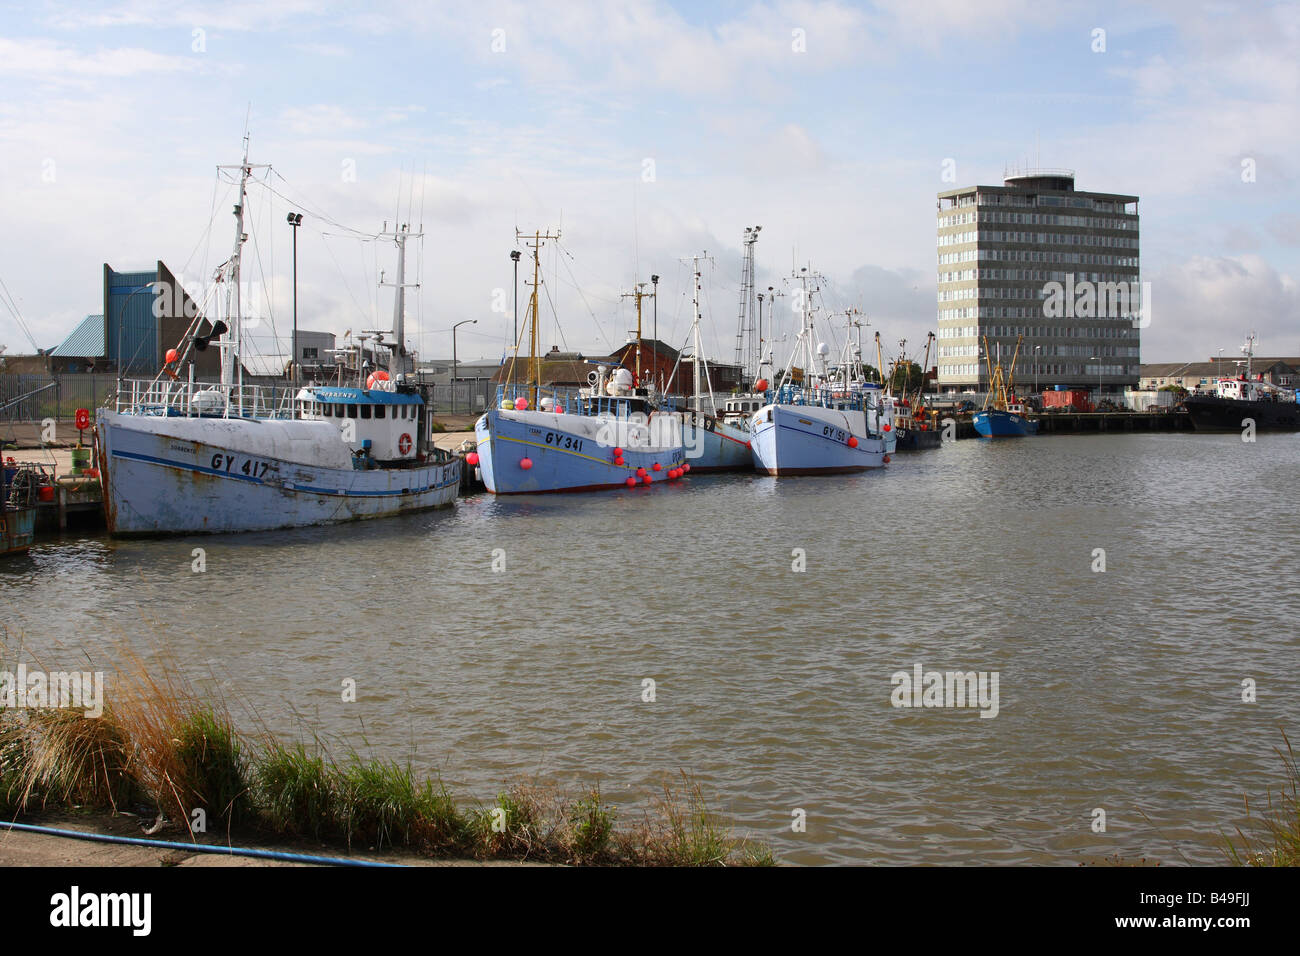 Les chalutiers de pêche à Grimsby Docks, Grimsby, England, Royaume-Uni Banque D'Images